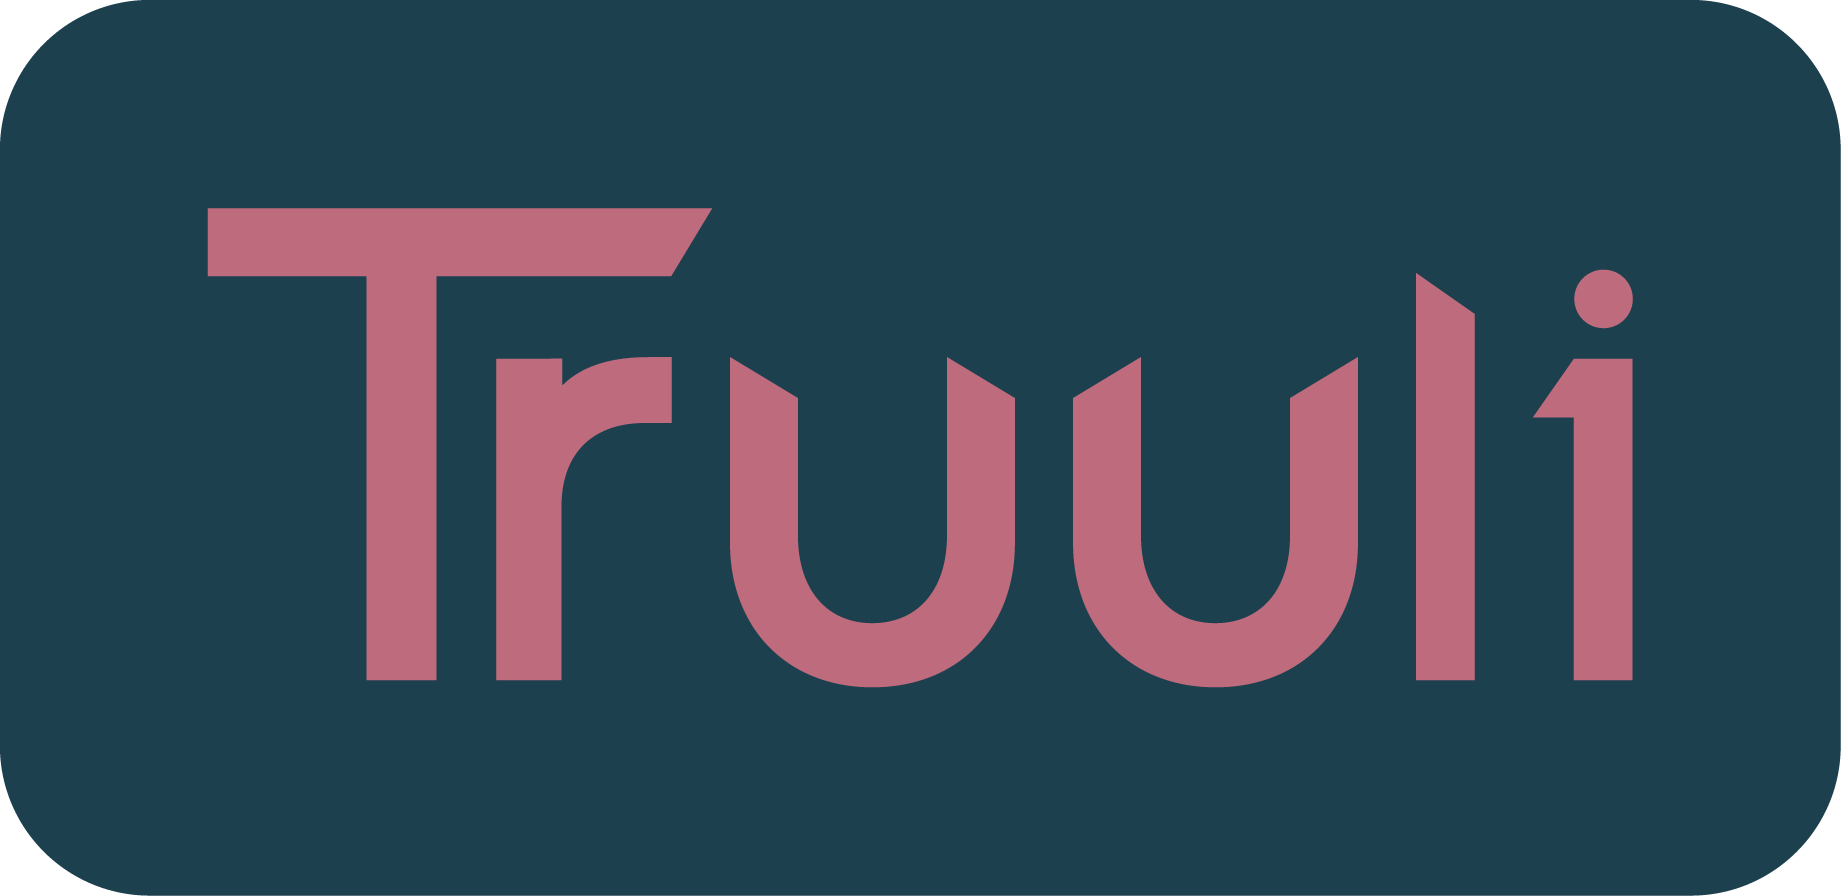 Truuli Logo